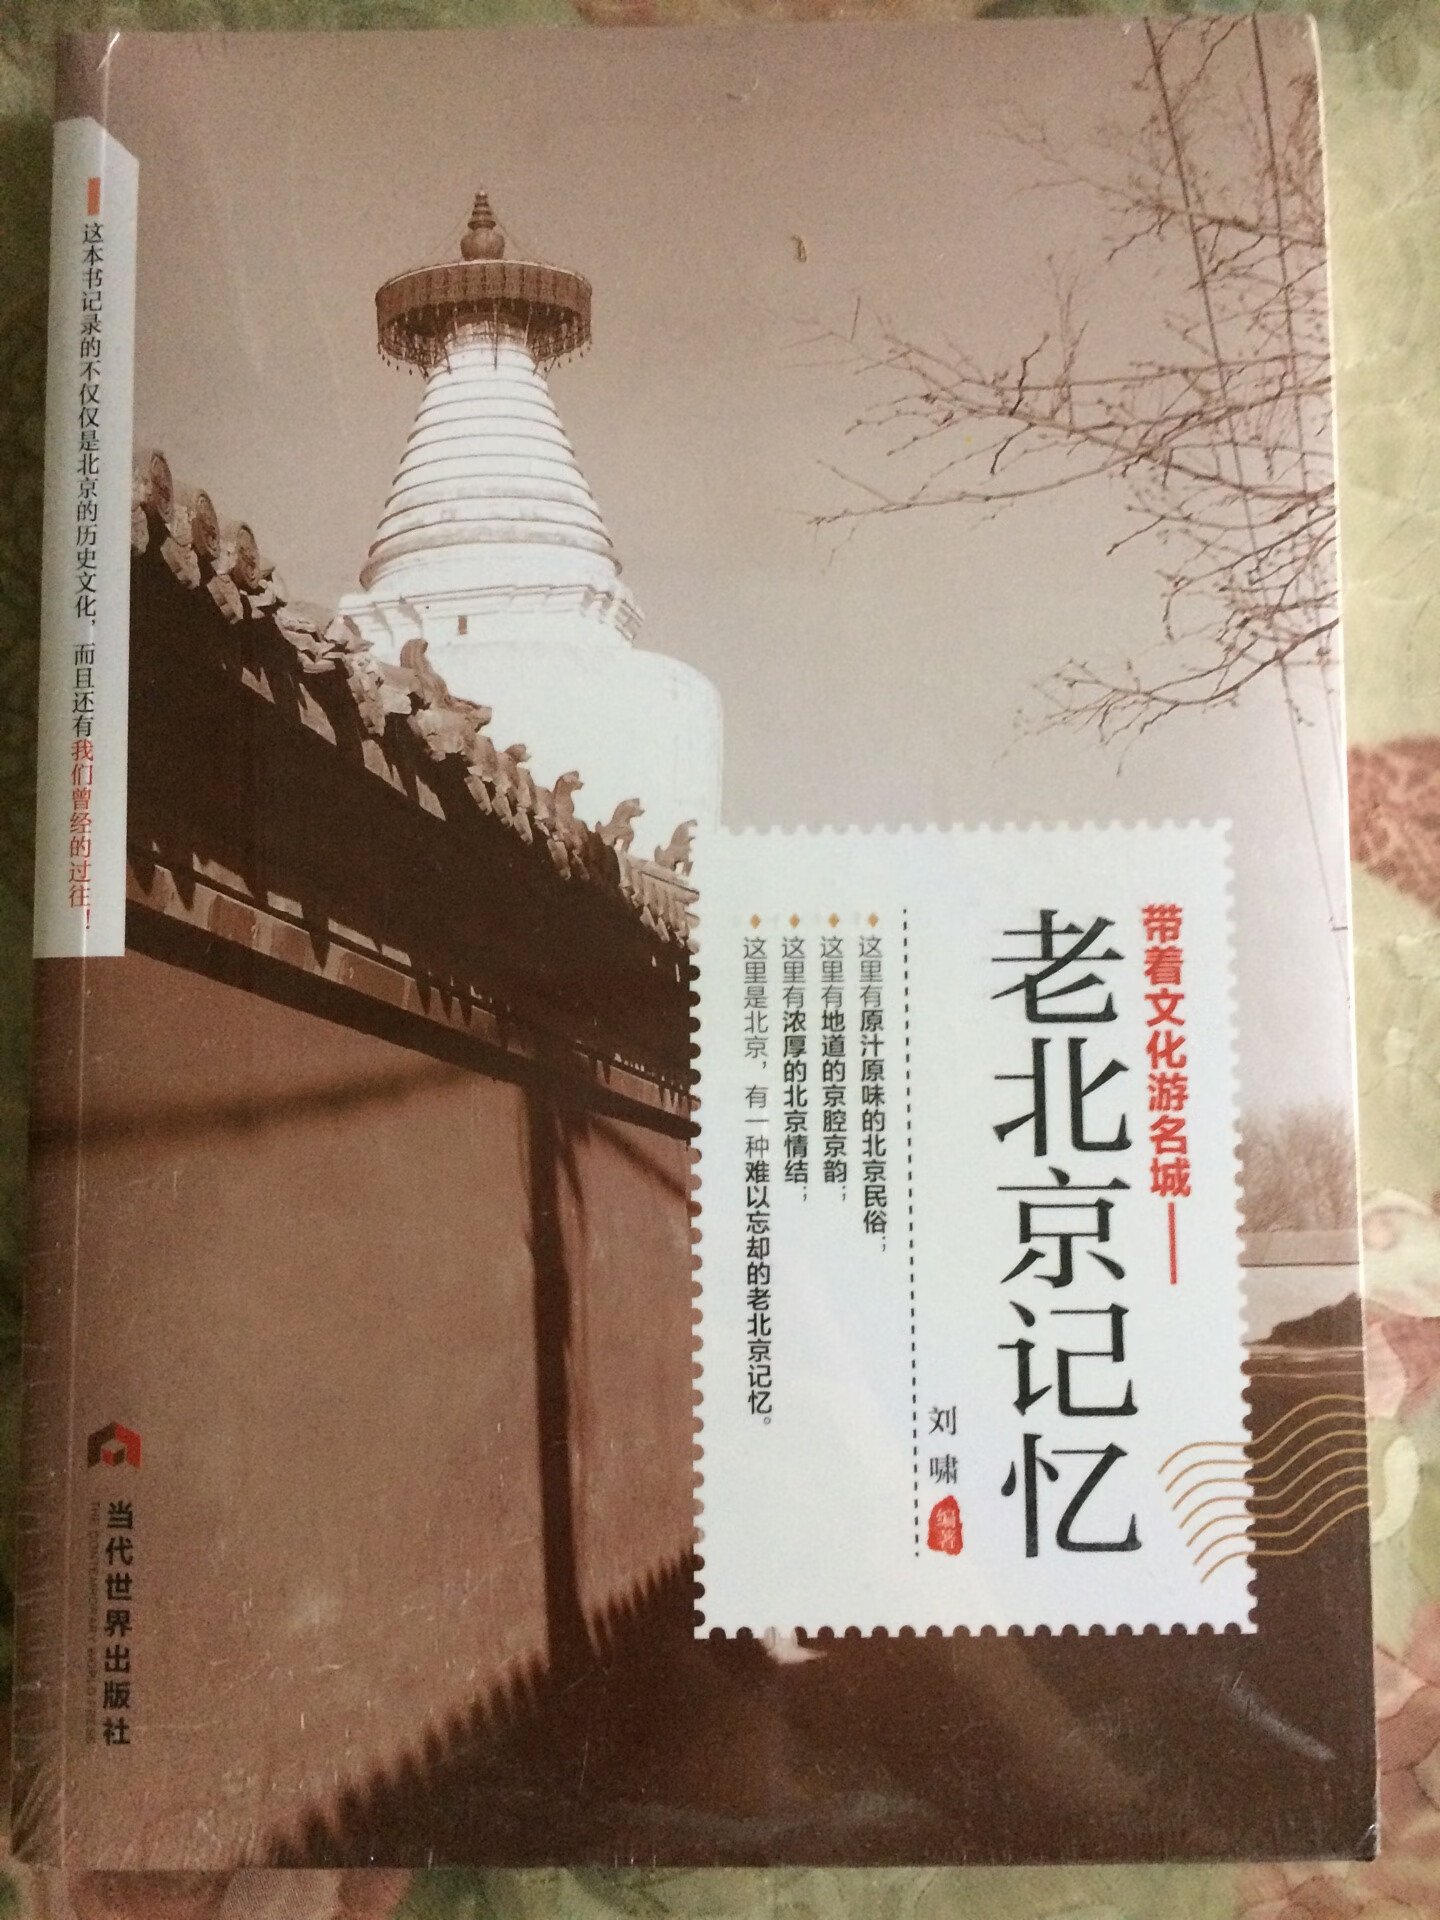 有塑封16开，带着文化游名城，领略老城风光，包罗北京的各方面，值得推荐。